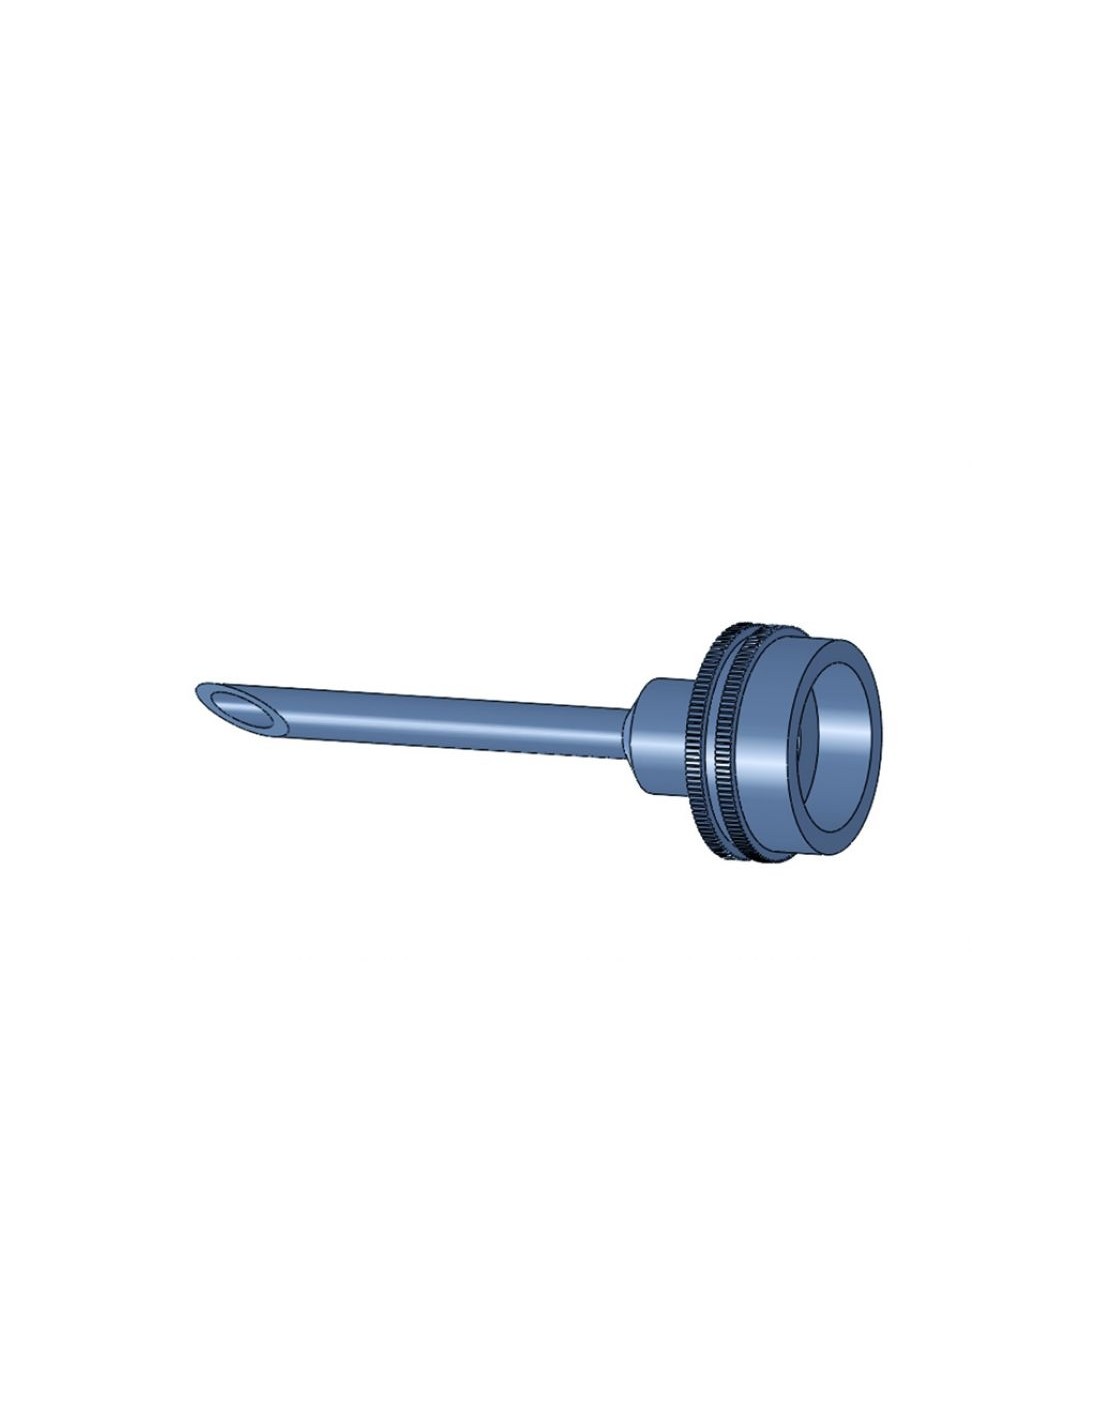 Spout ÃƒÂ¸ 10 mm for adapter